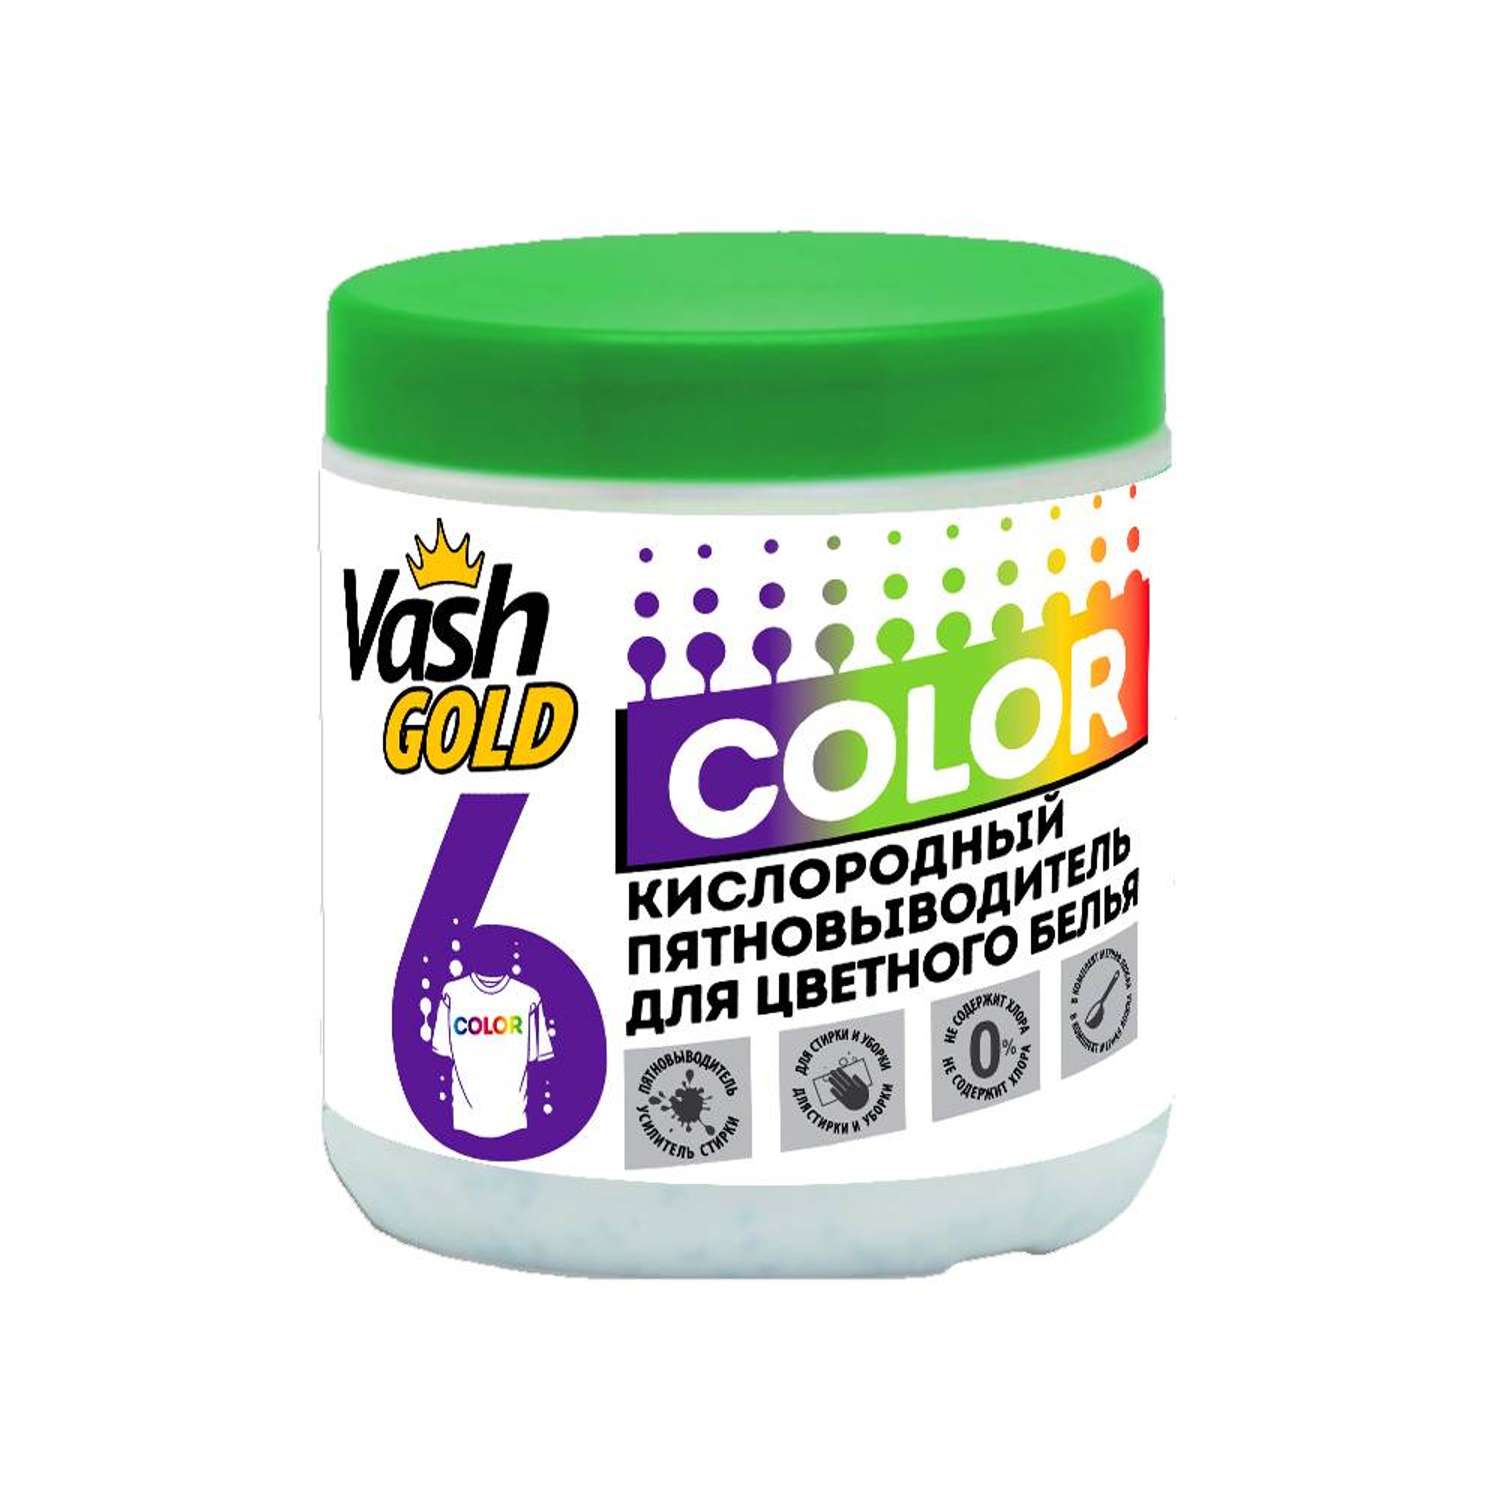 Кислородный пятновыводитель Vash Gold для цветного белья 550г - фото 1